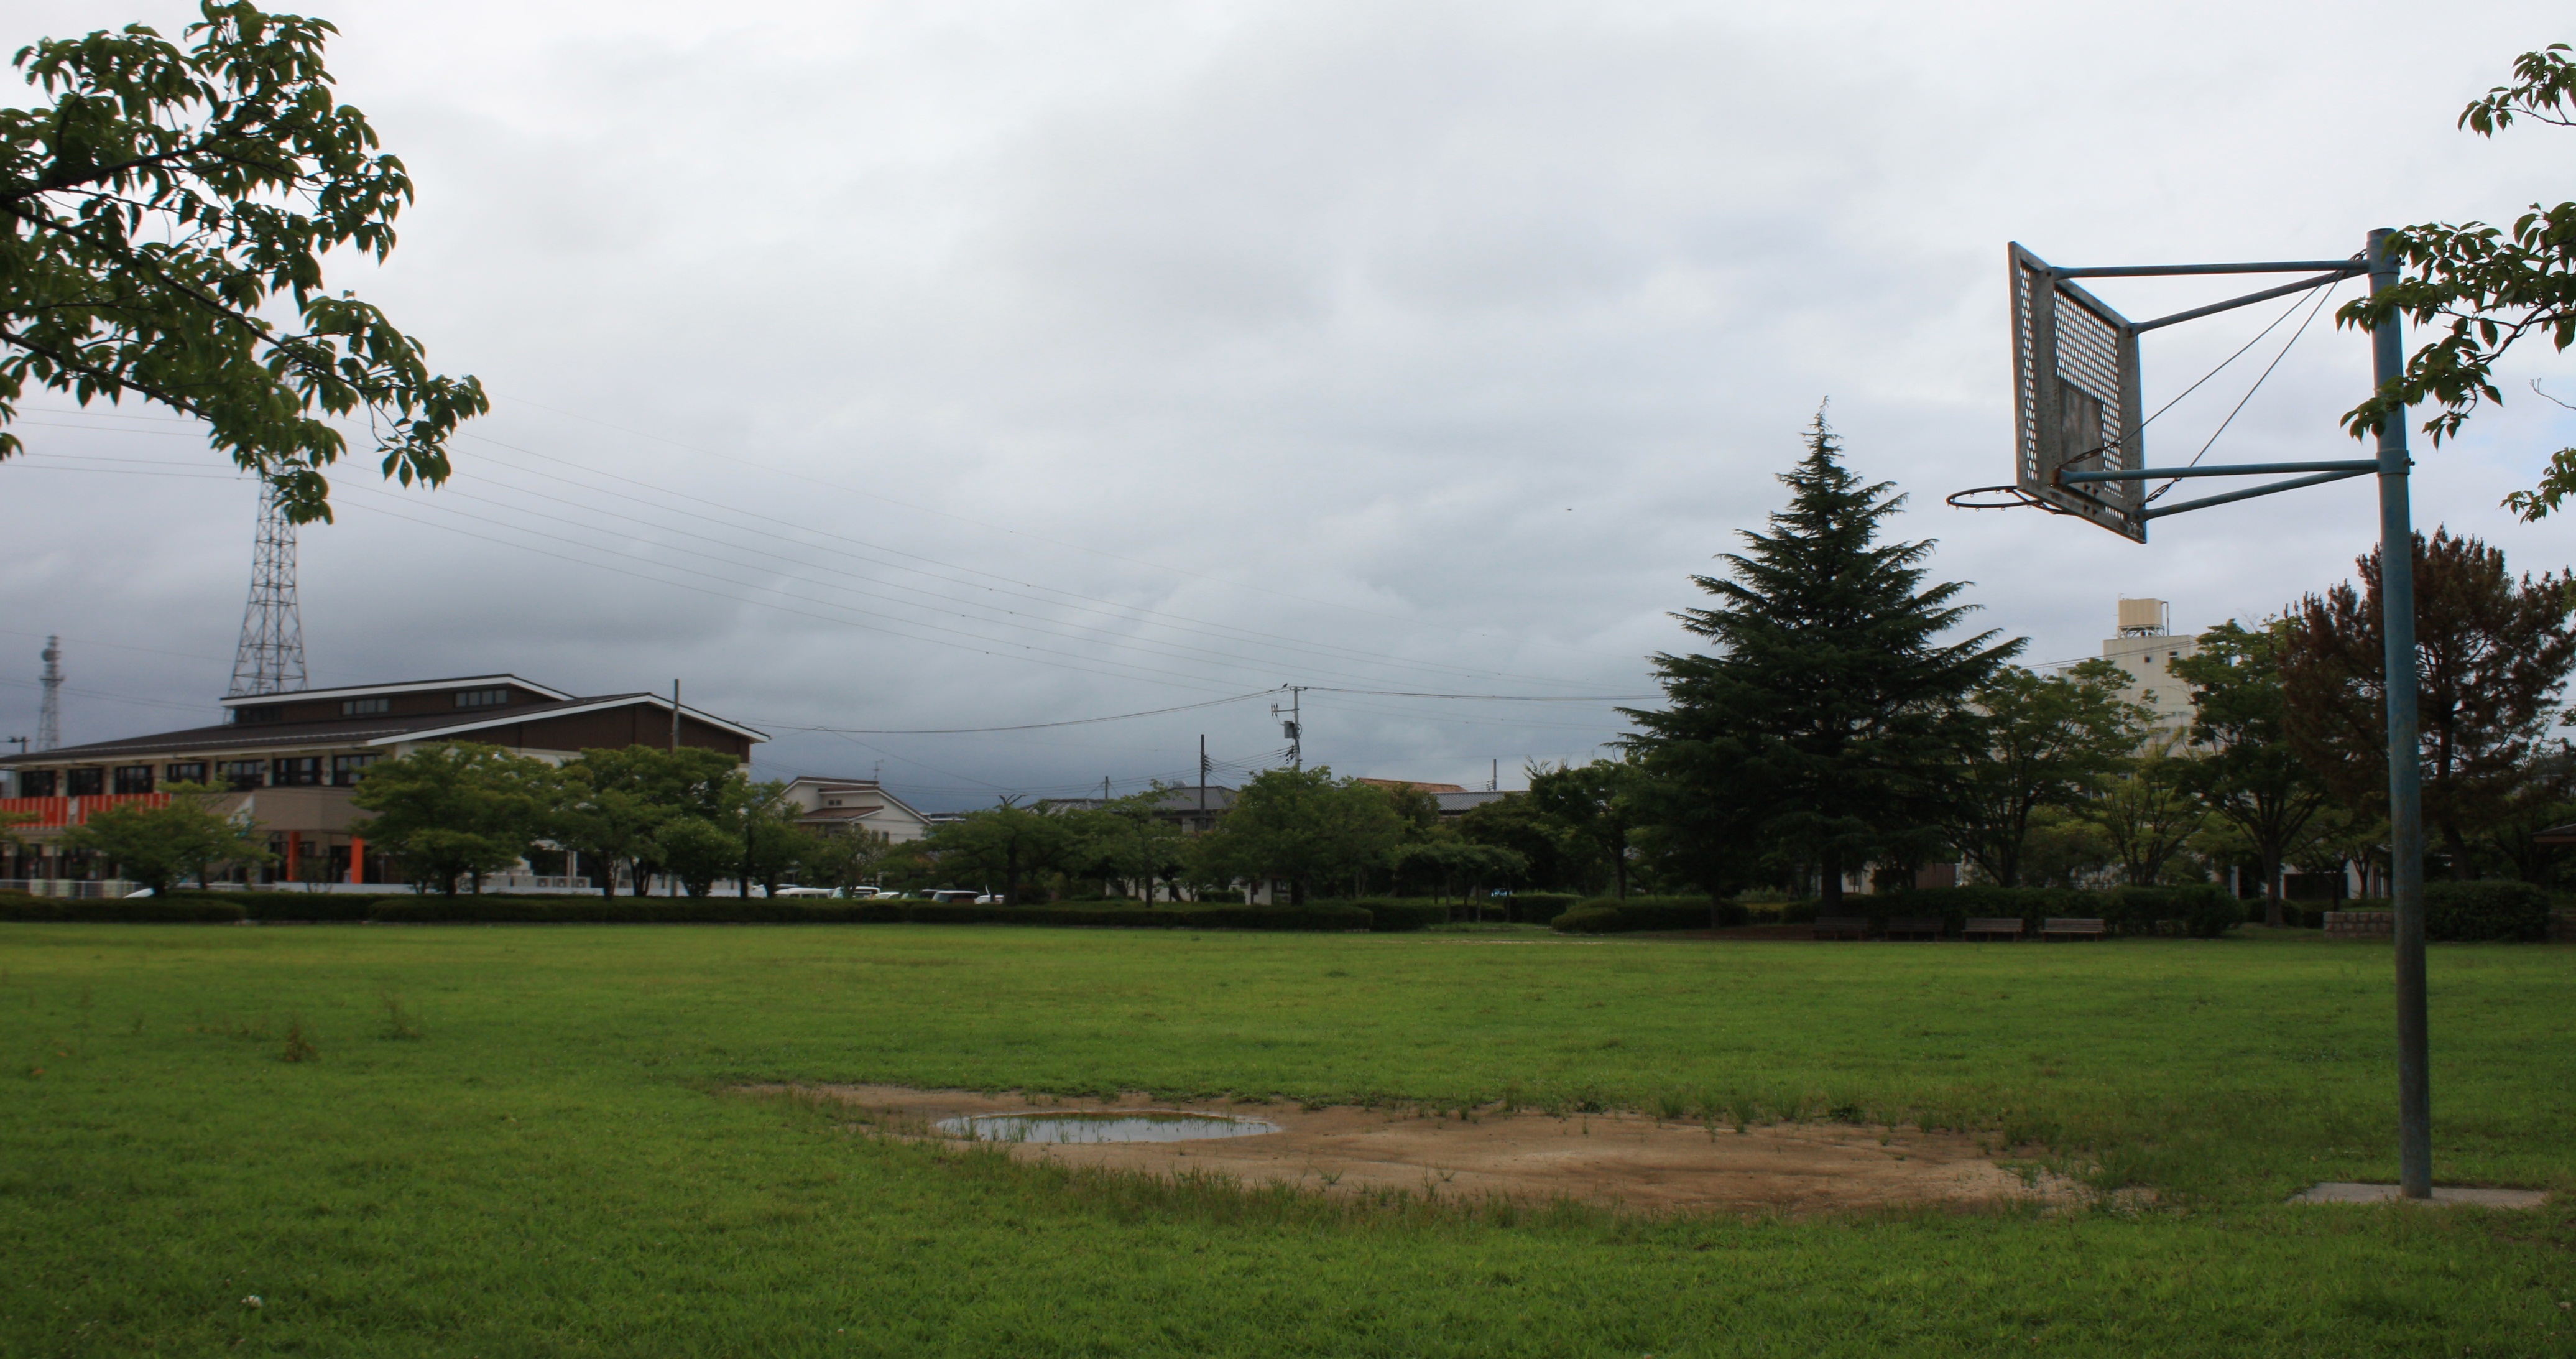 9.■写真3-2　平東部土地区画整理事業区域内に配置された「白土公園」　写真3-1に見える松尾病院の建物、NTTの鉄塔が、それぞれ同じ角度で見える。　〔令和3(2021)年8月　小宅幸一撮影〕